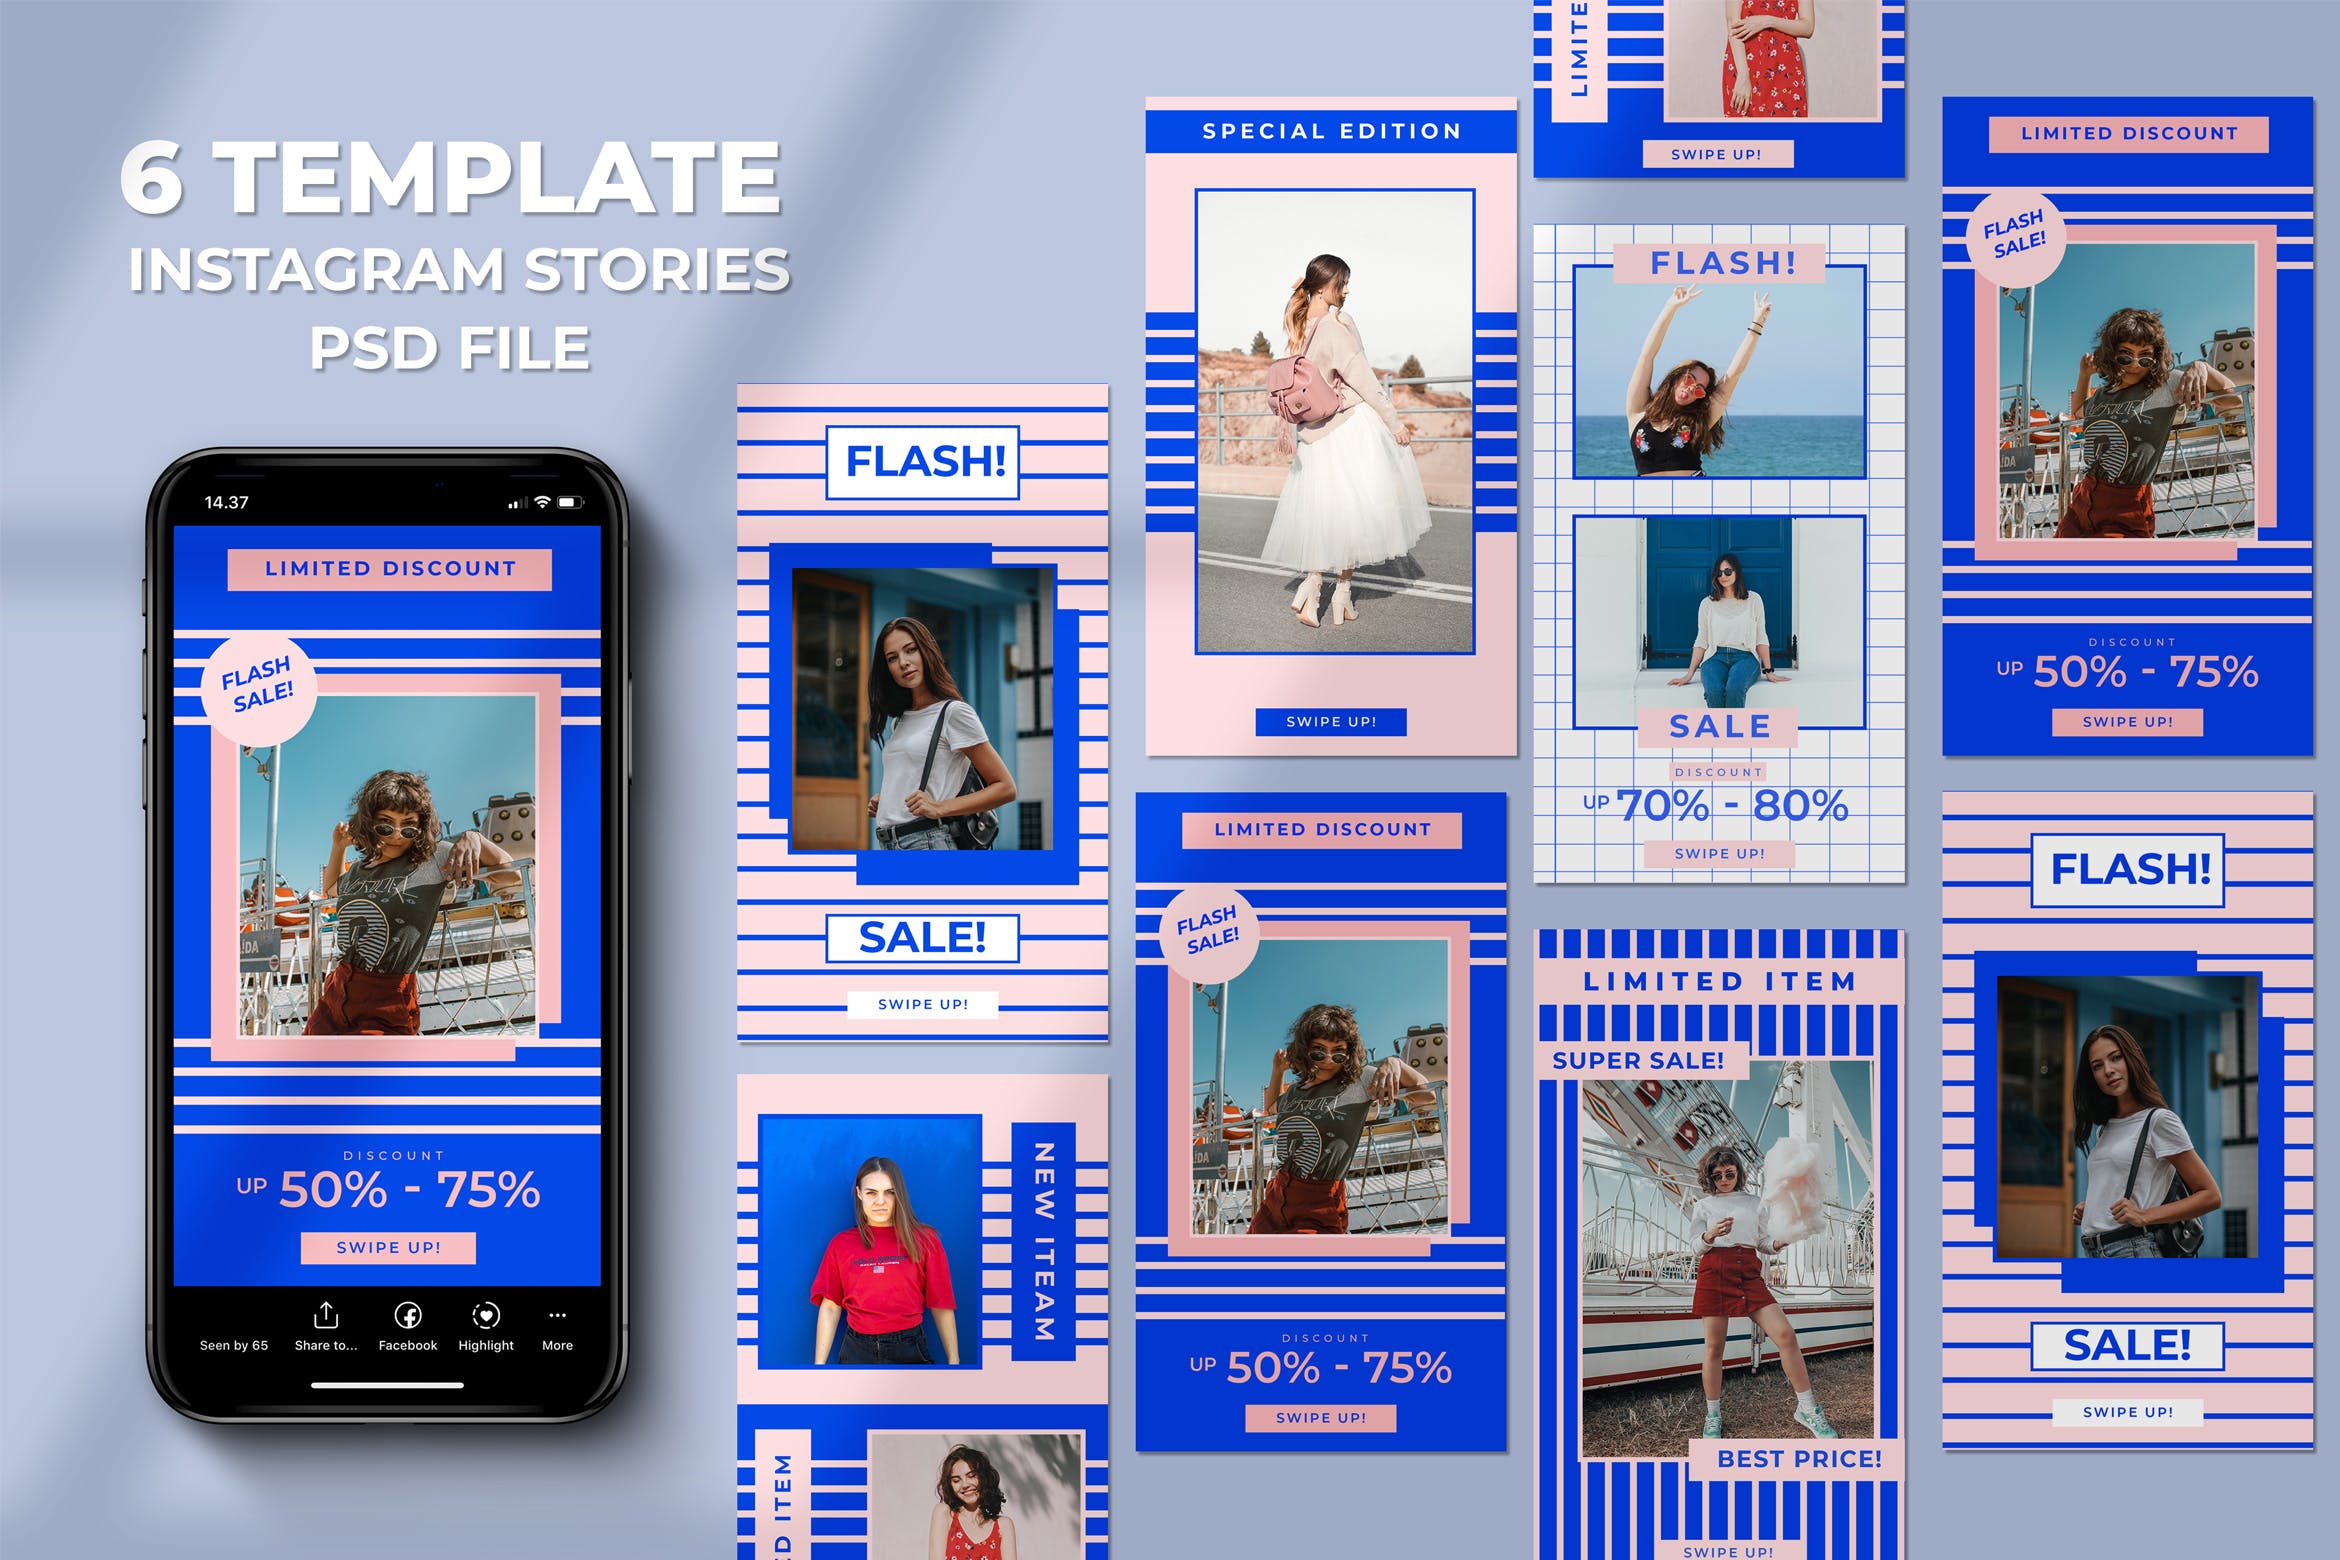 粉蓝配色少女系列Instagram故事贴图社交媒体模板 Flash Sale Instagram Stories设计素材模板